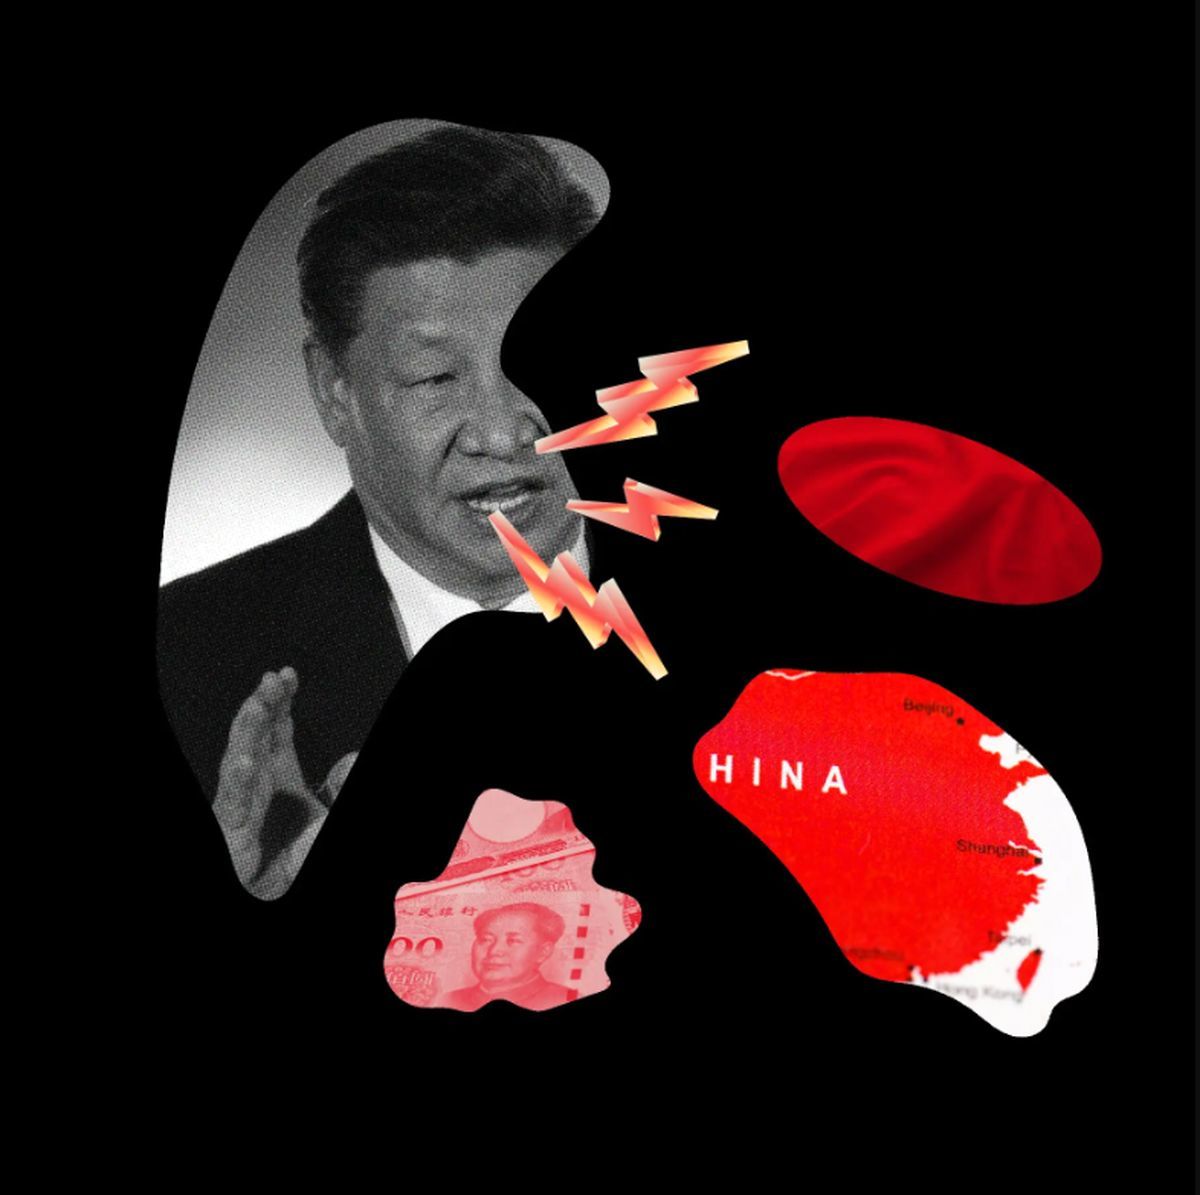 بازتعریف دیکتاتوری در چین